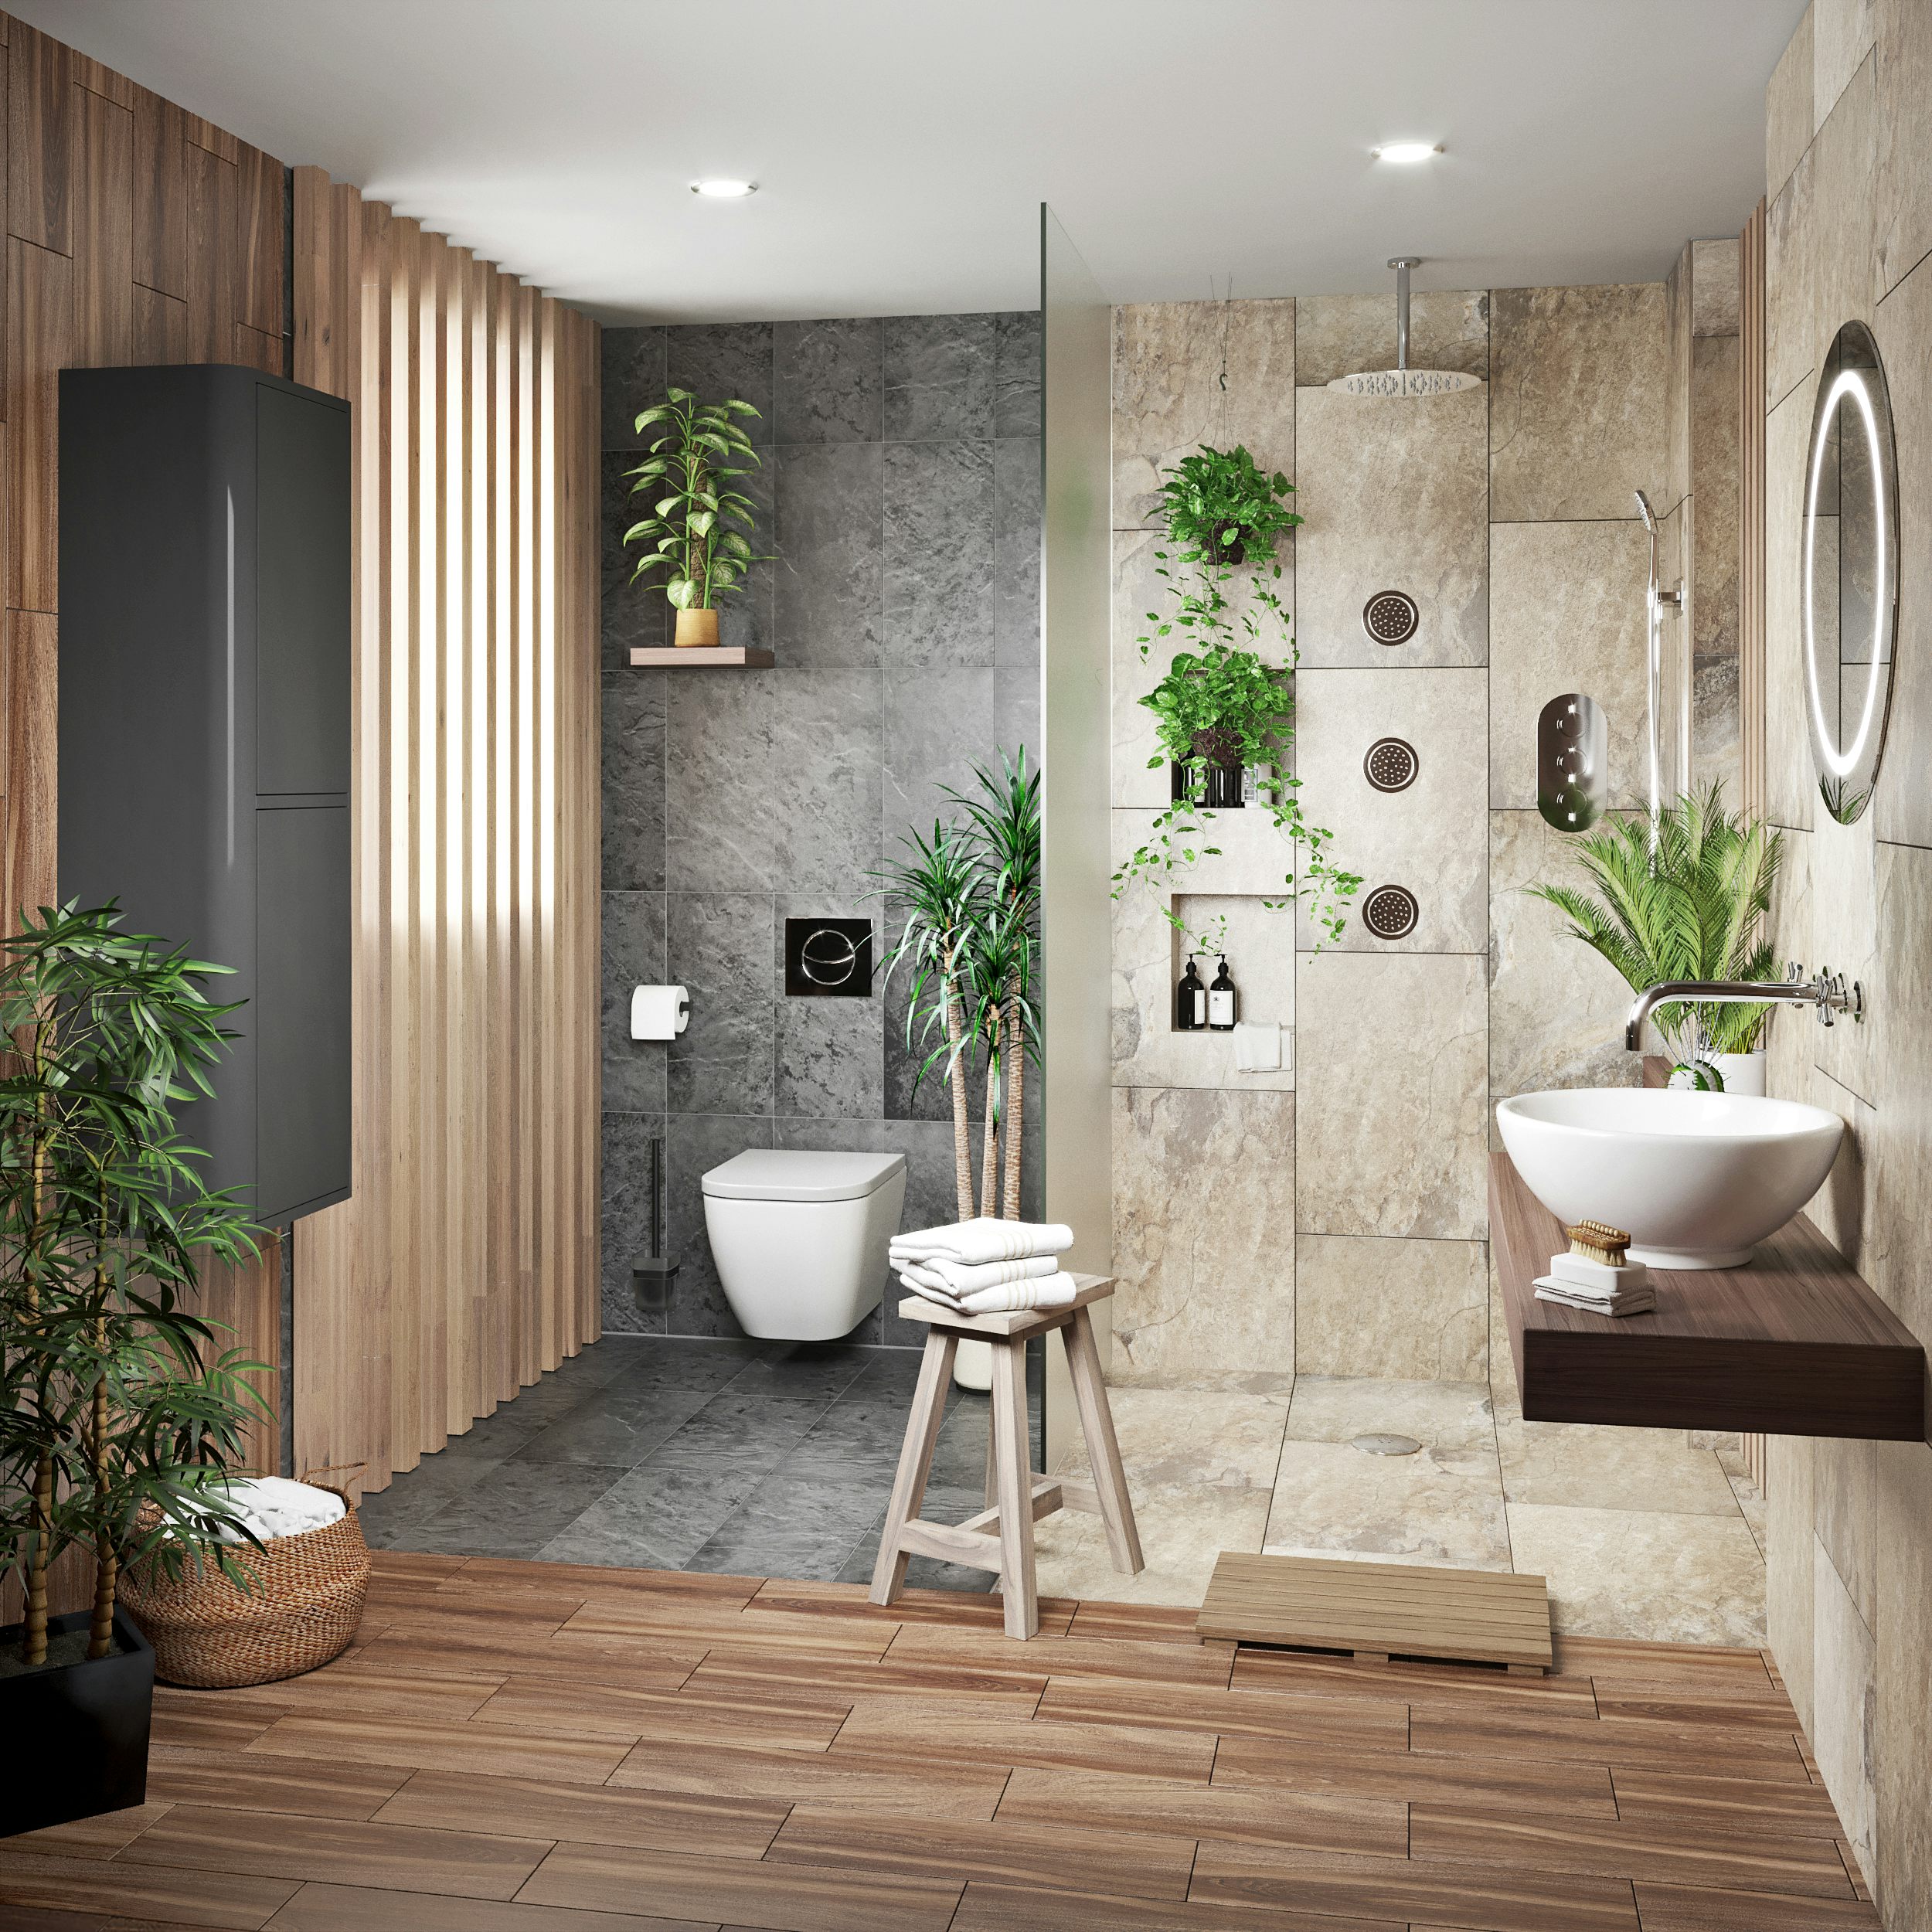 New Tropical Bathroom Ideas with Simple Decor